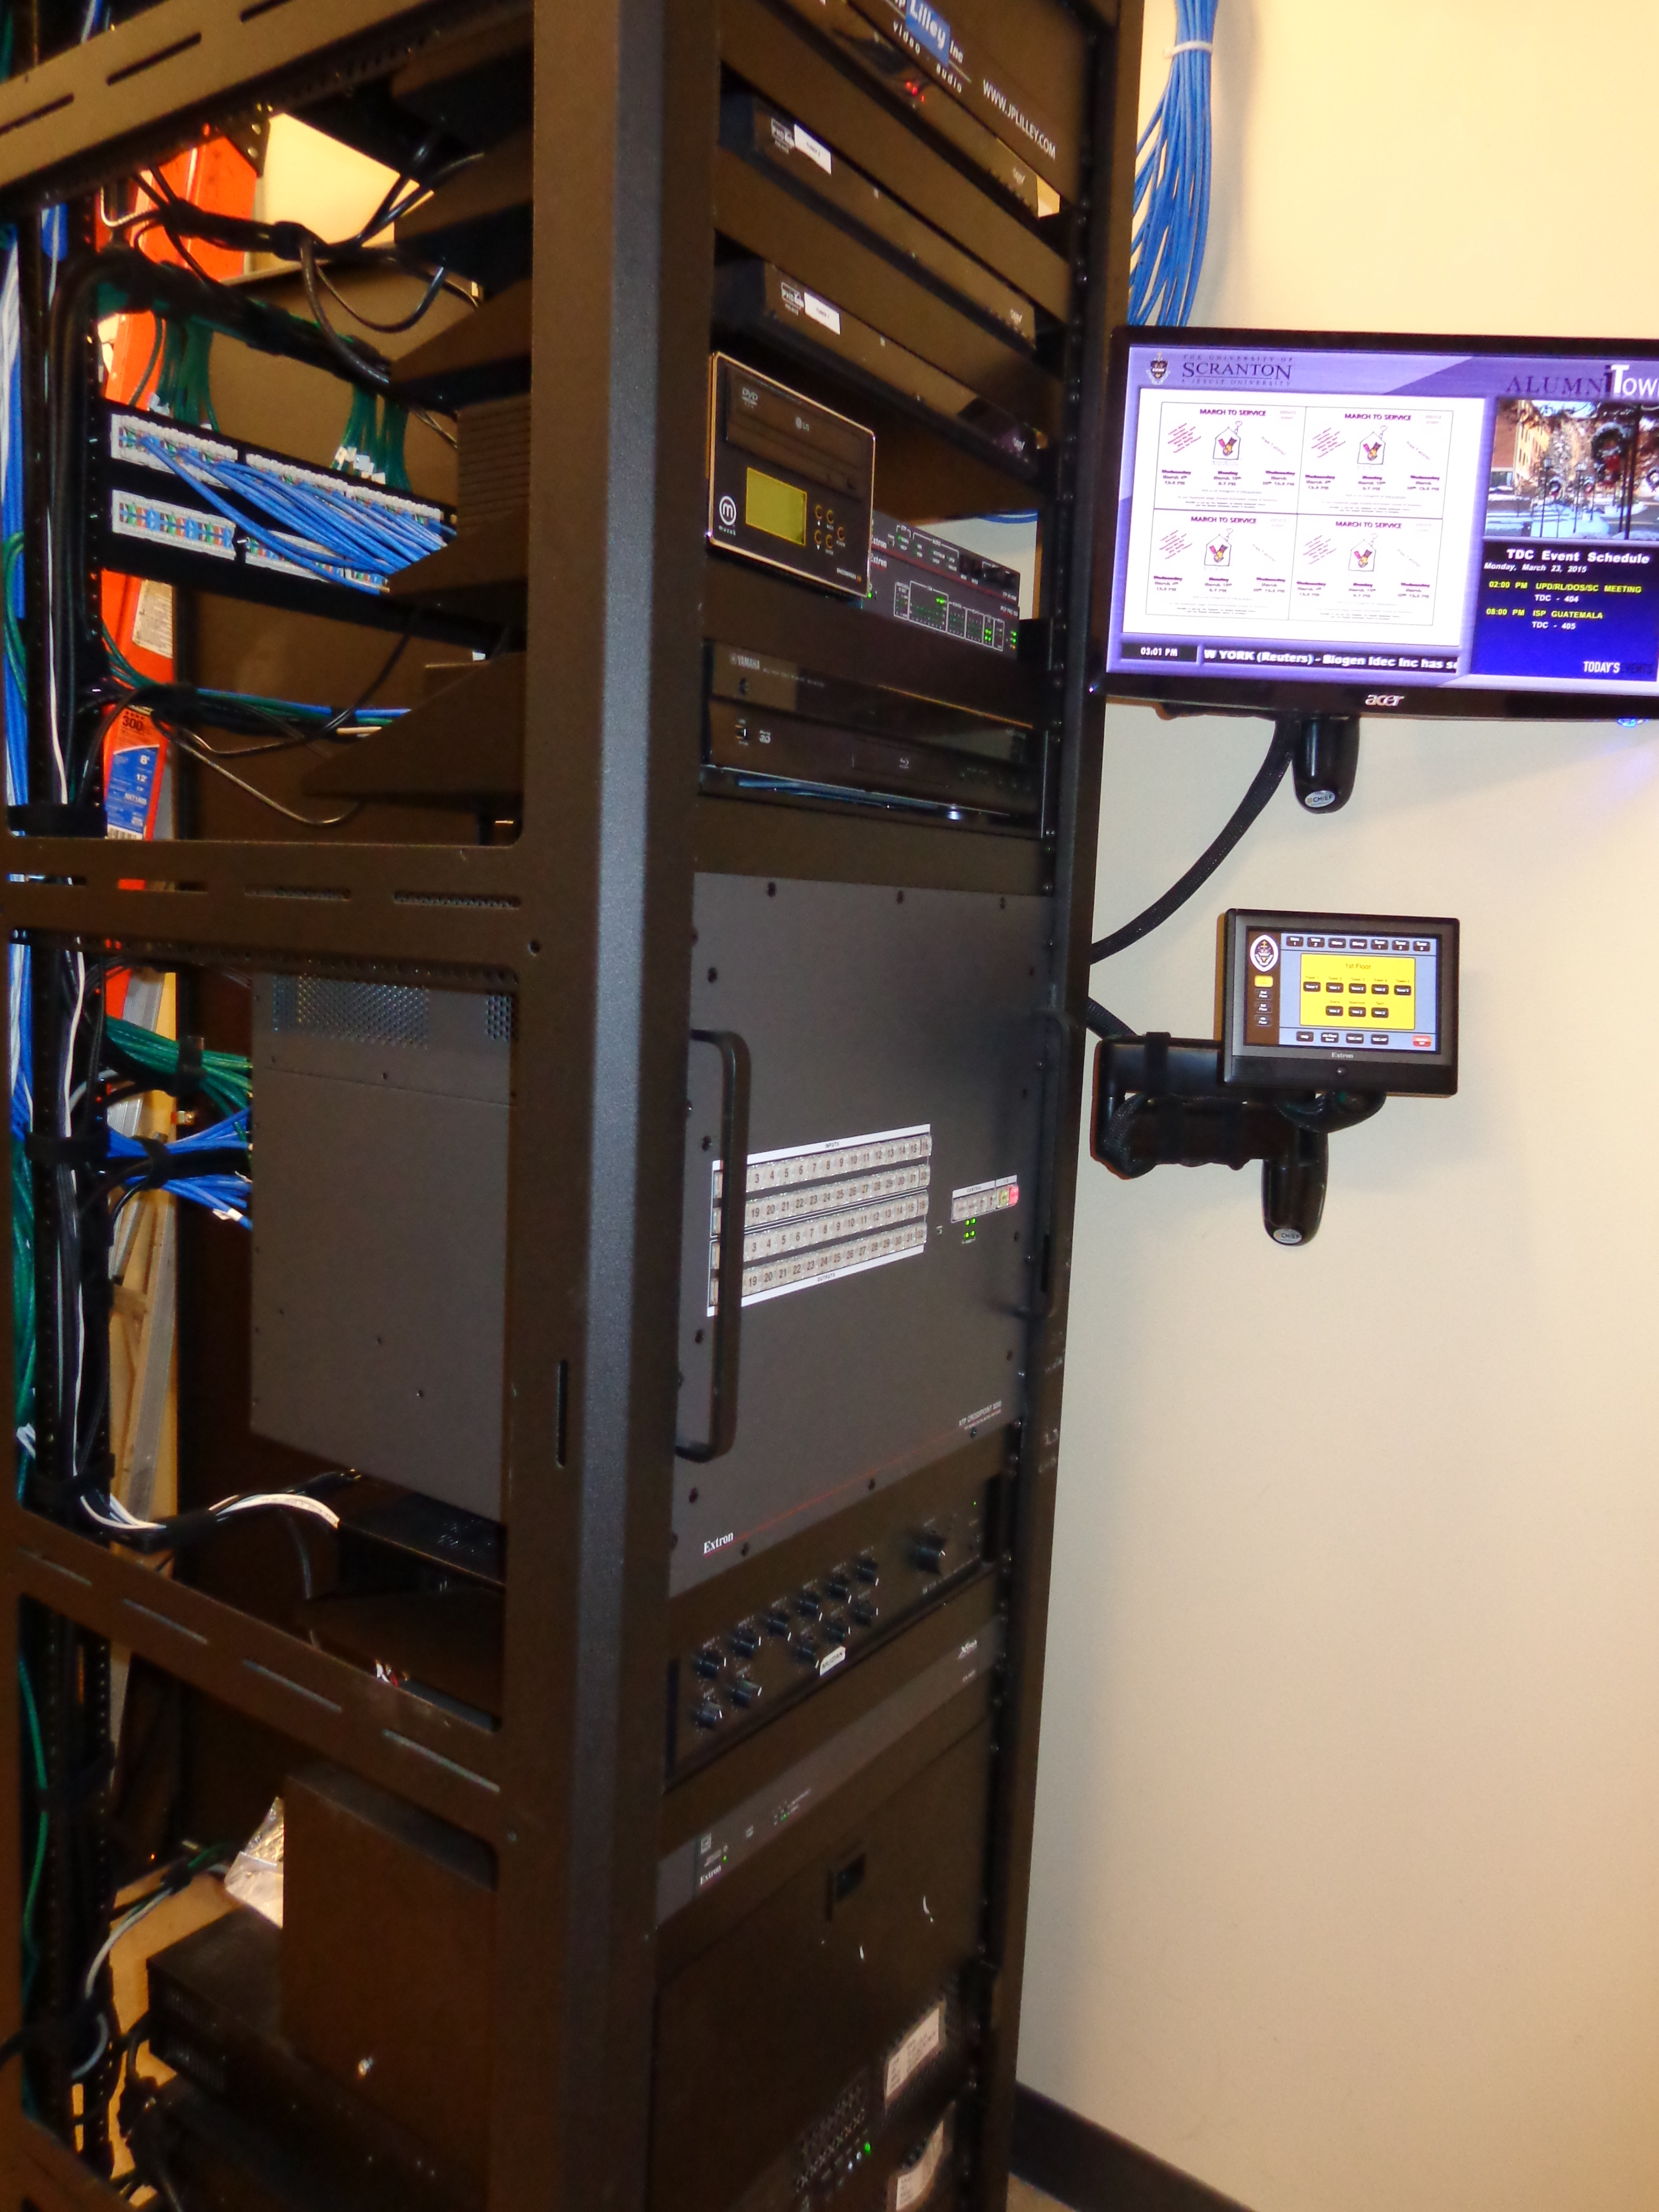 AV equipment mounted on rack